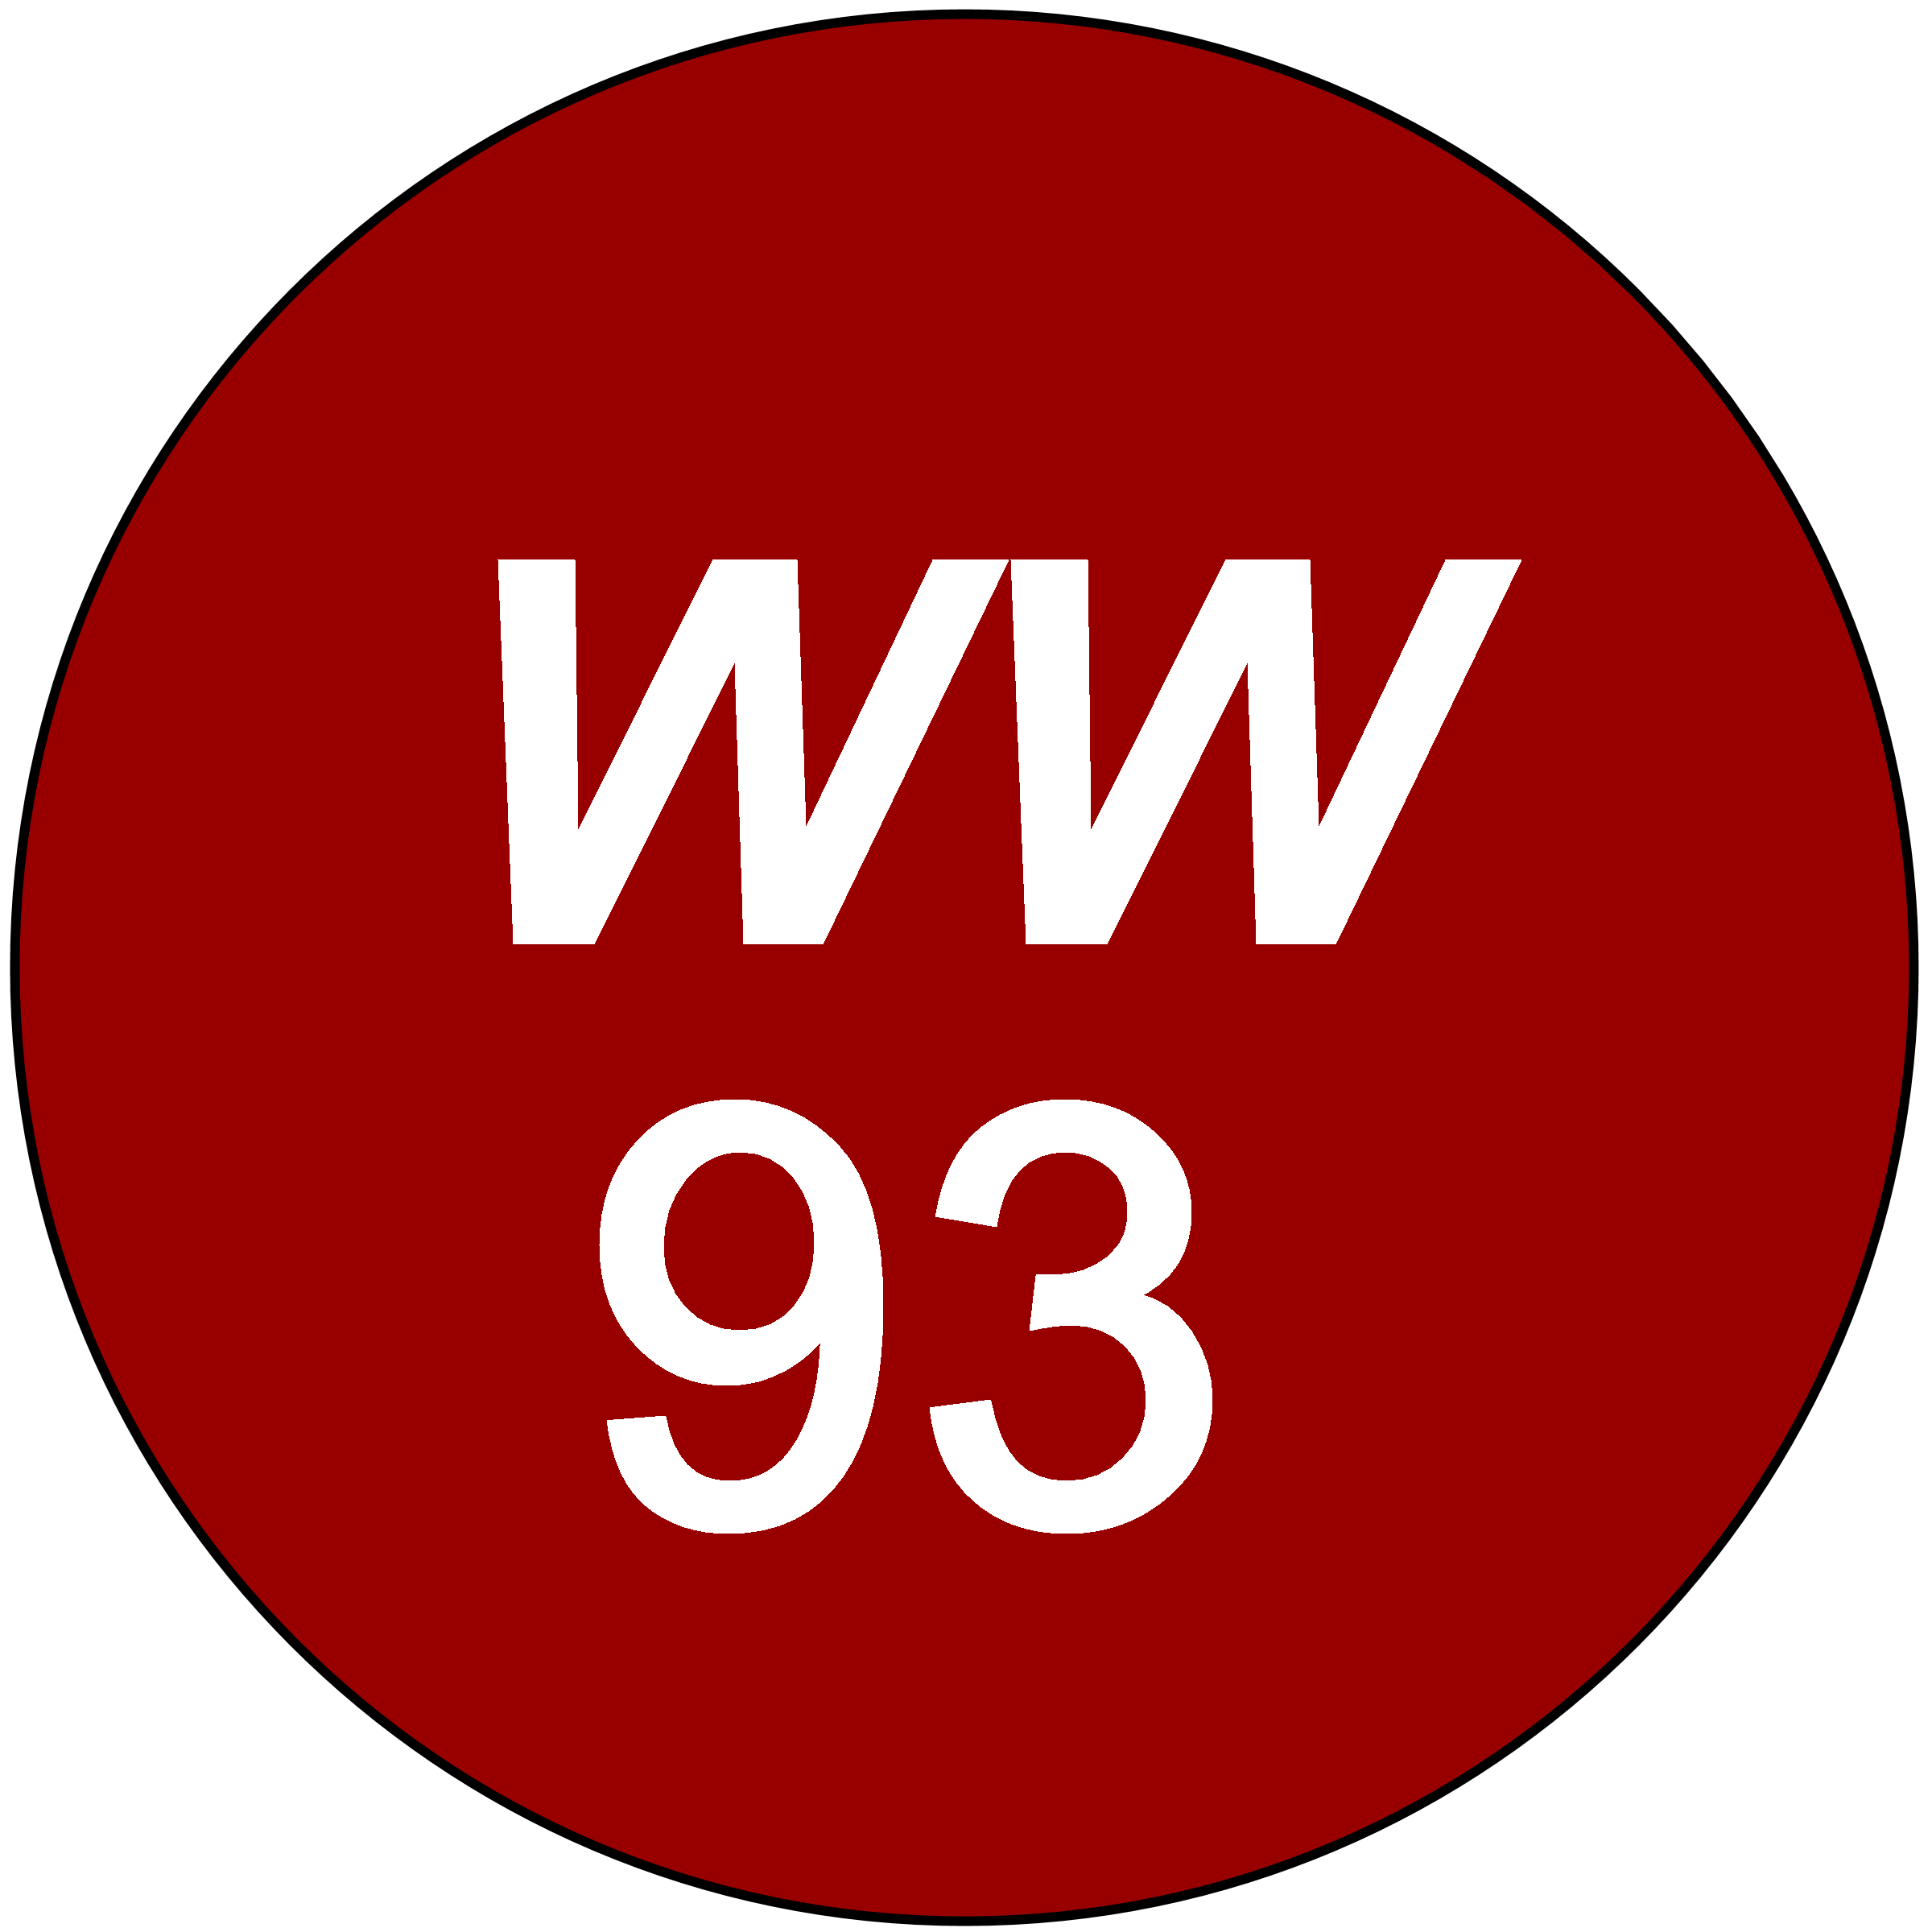 ww93